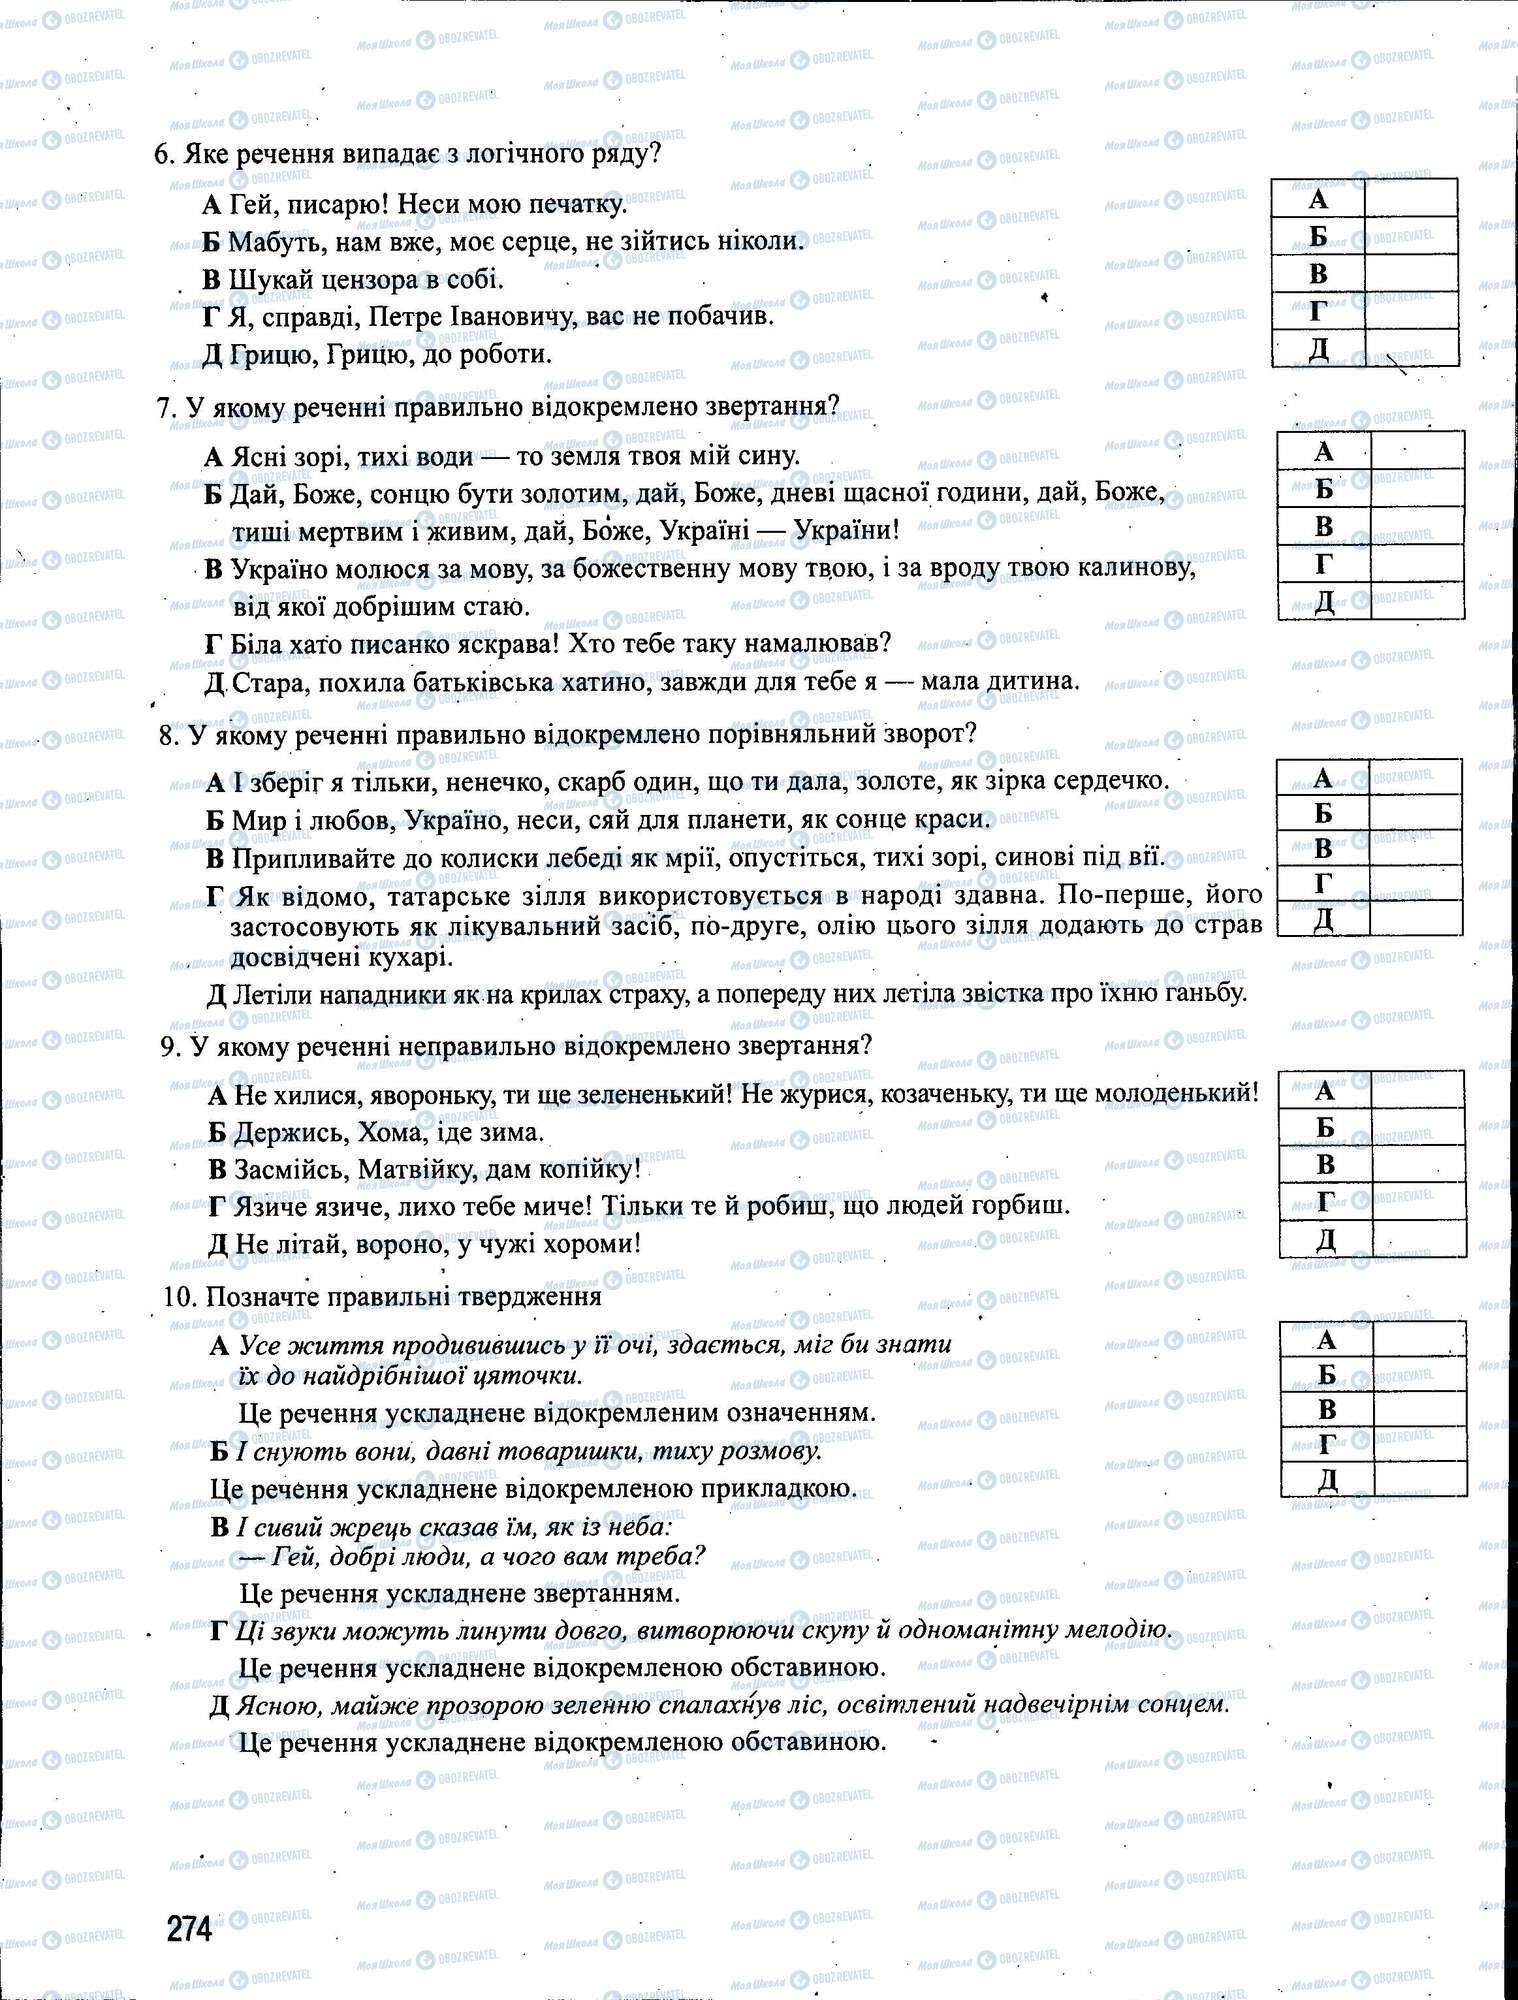 ЗНО Укр мова 11 класс страница 274